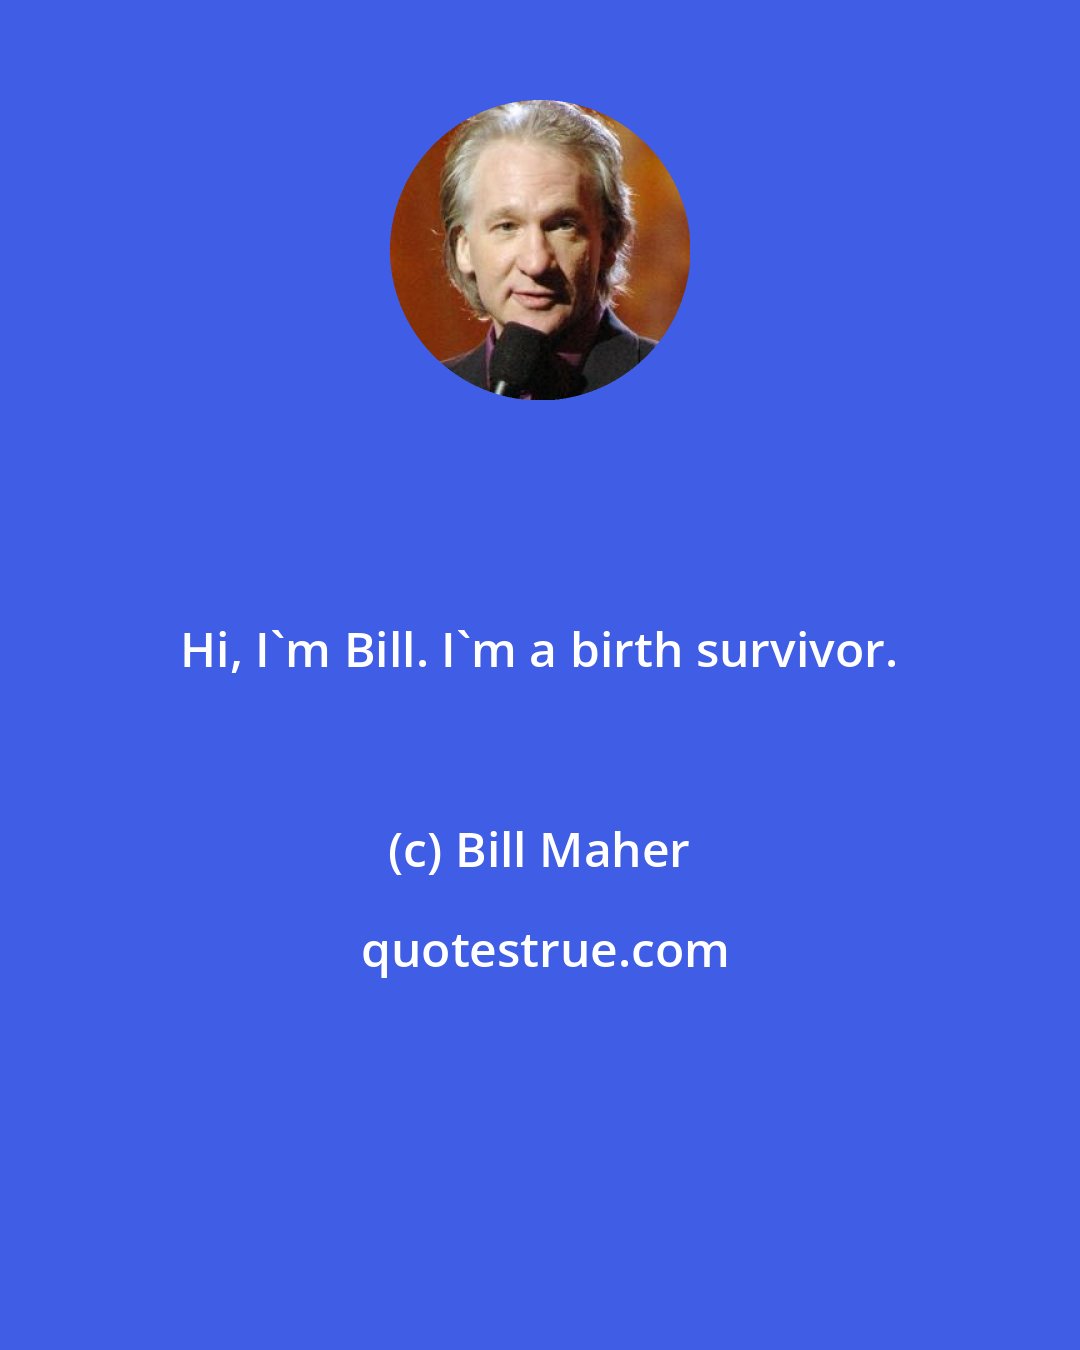 Bill Maher: Hi, I'm Bill. I'm a birth survivor.